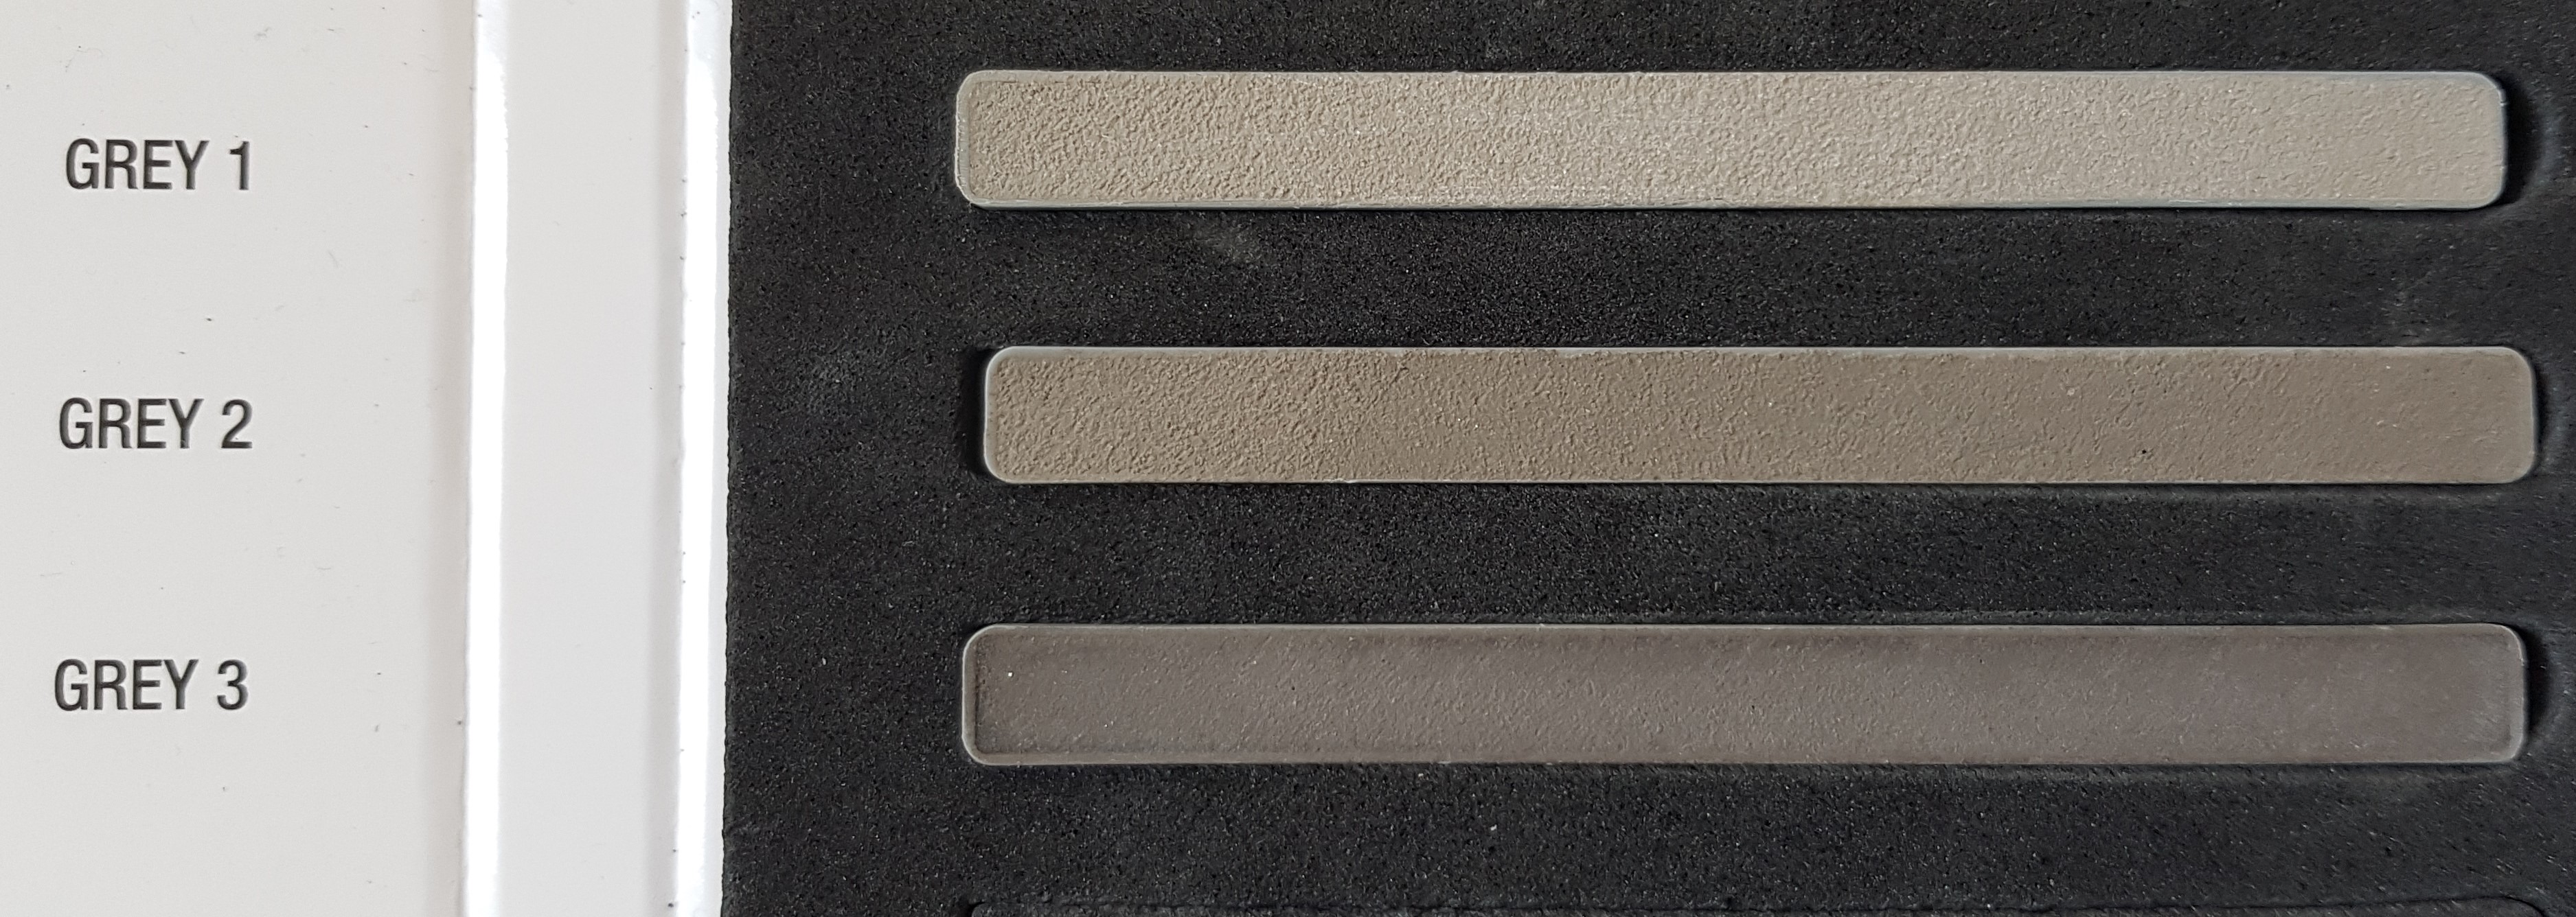 Gris ciment  Grey 2  joint Litokol stylegrout 0-8 mm hydro plus par 3 kilos